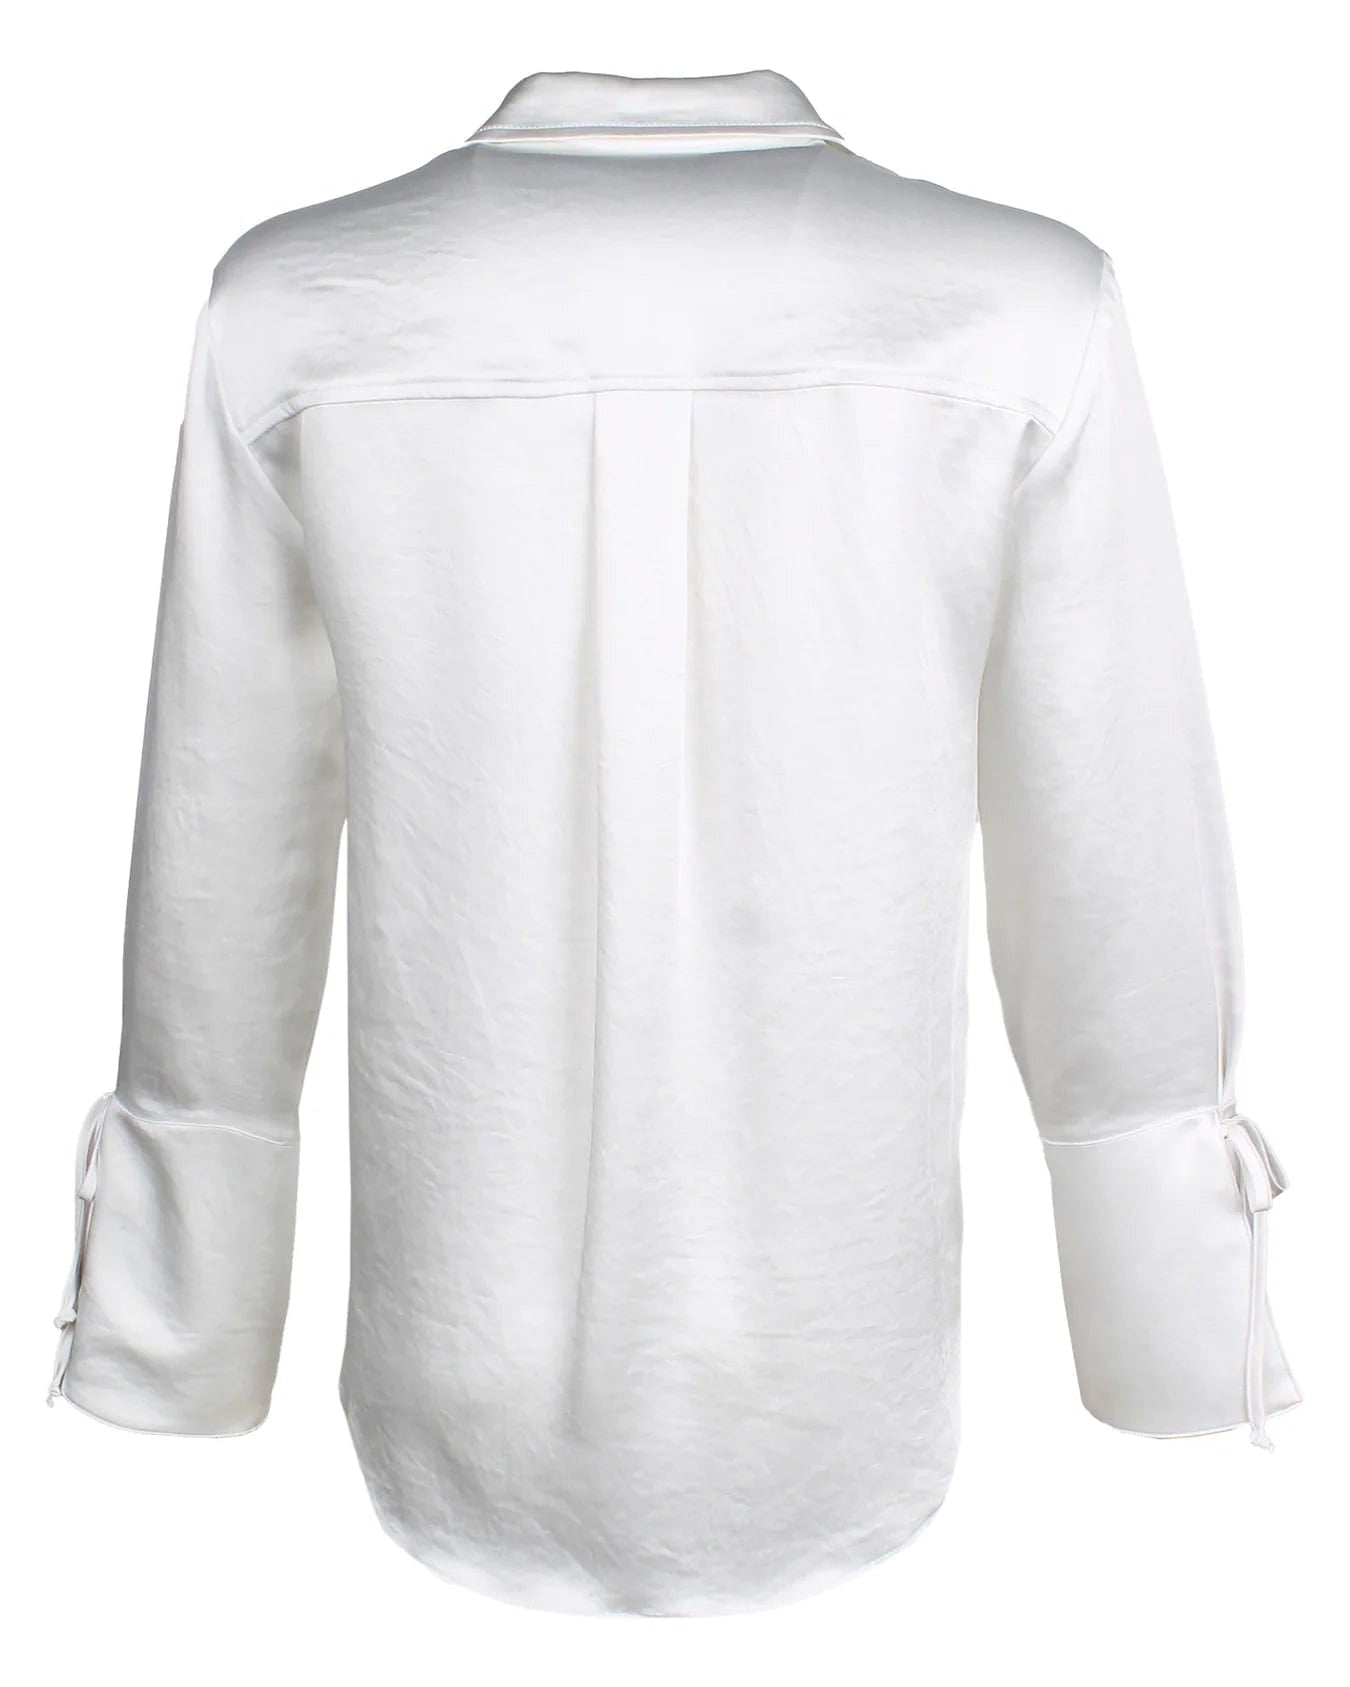 Finley Shirts Women's Shirts & Tops Finley Rachel Button-Down Hammered Satin Shirt